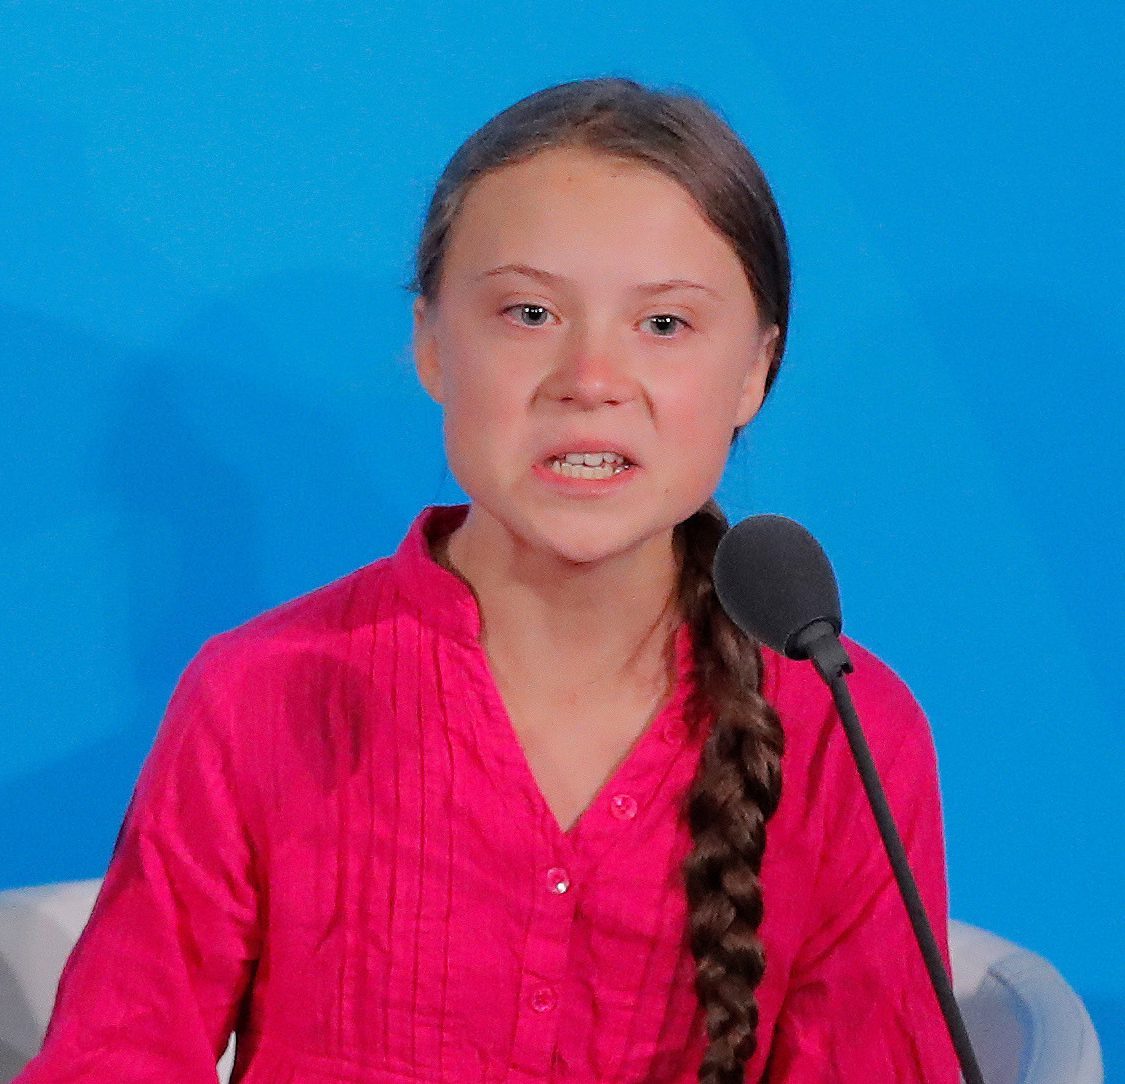 Greta thunberg is ugly